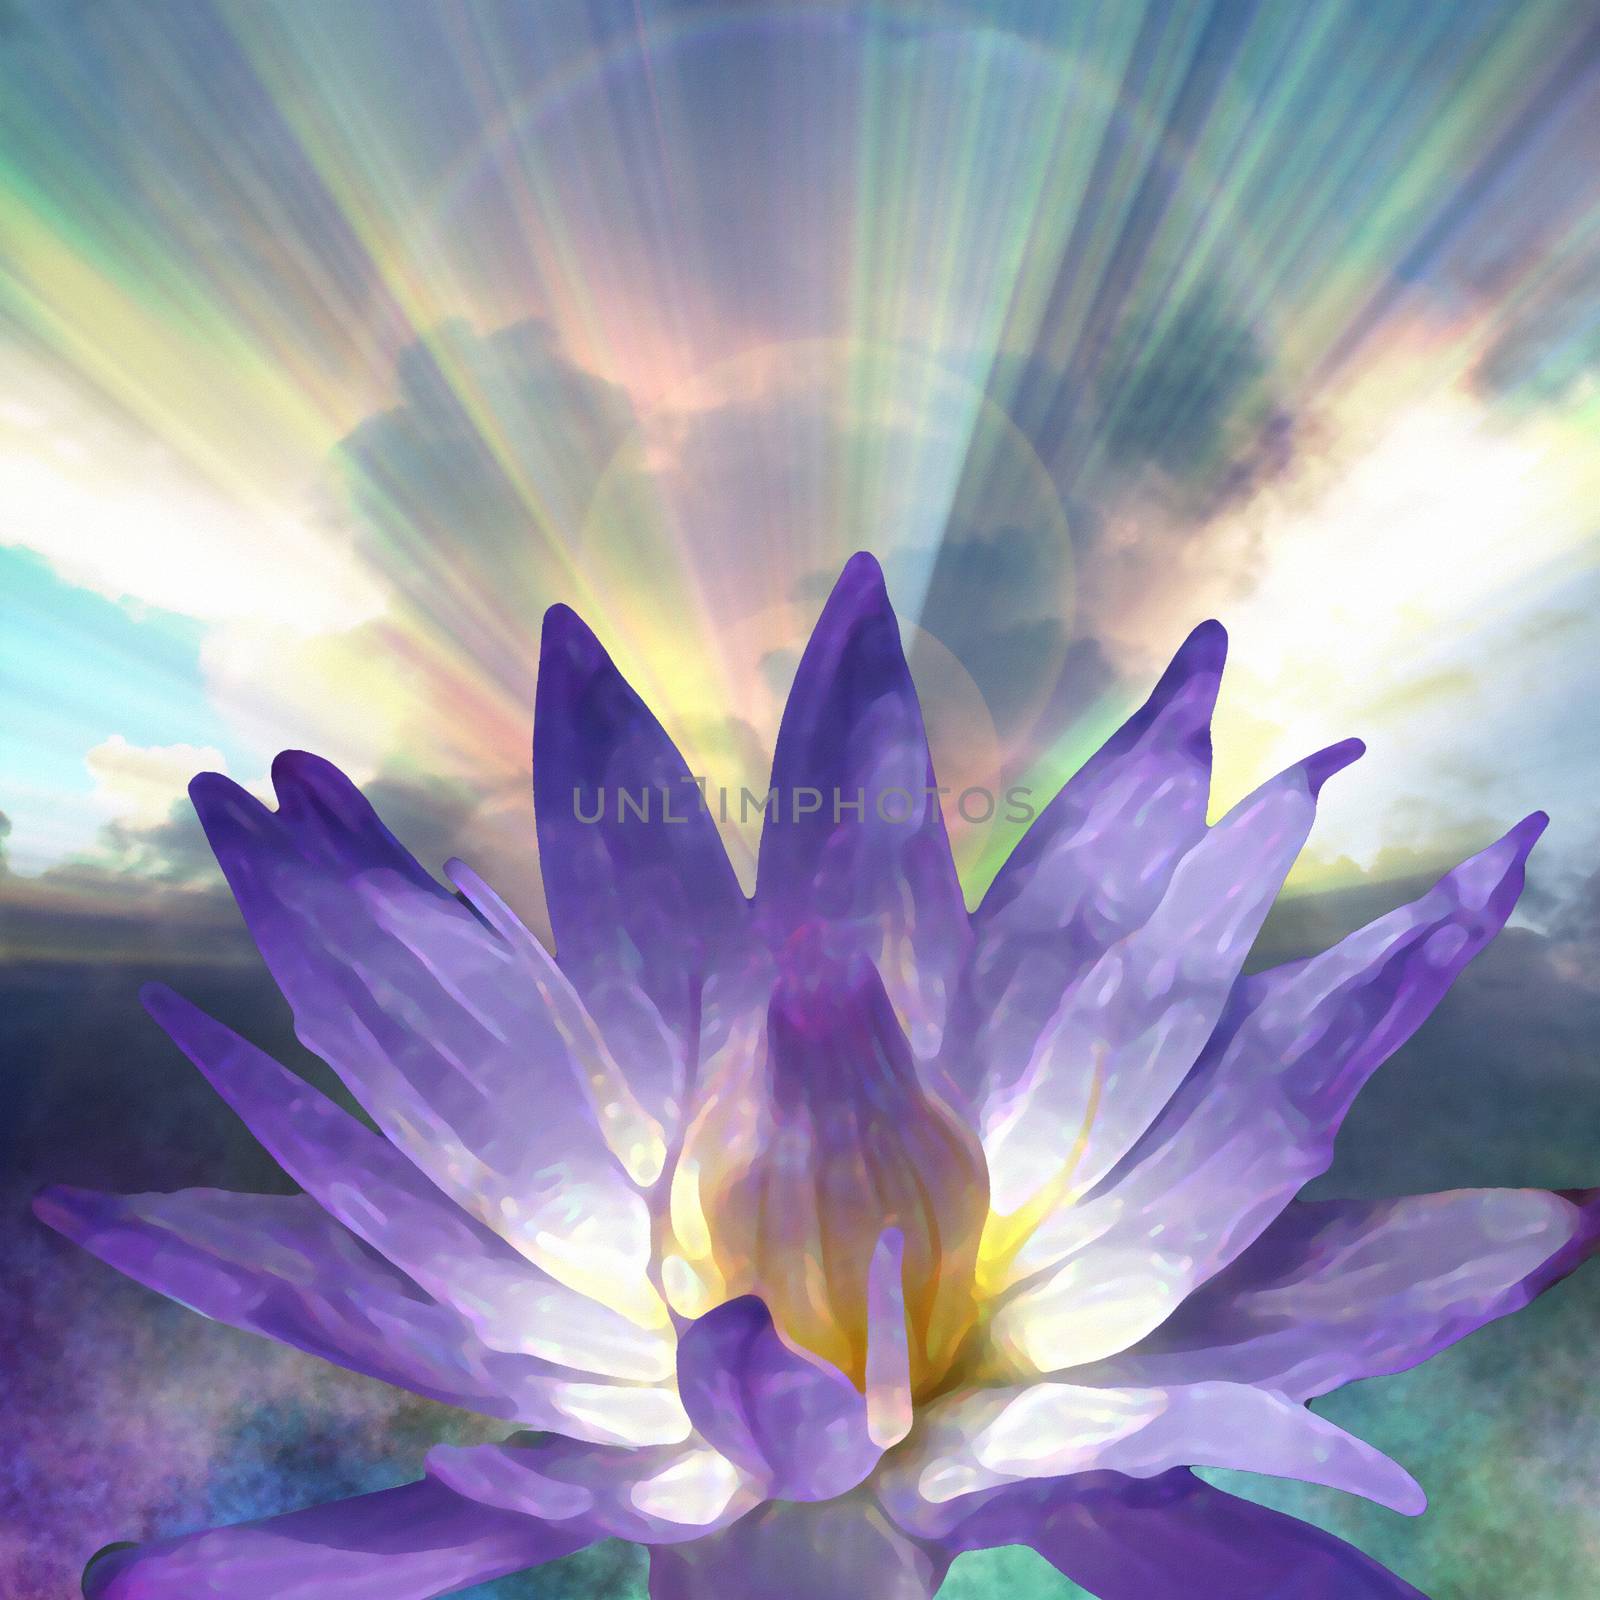 Purple Lotus flower in sunbeams